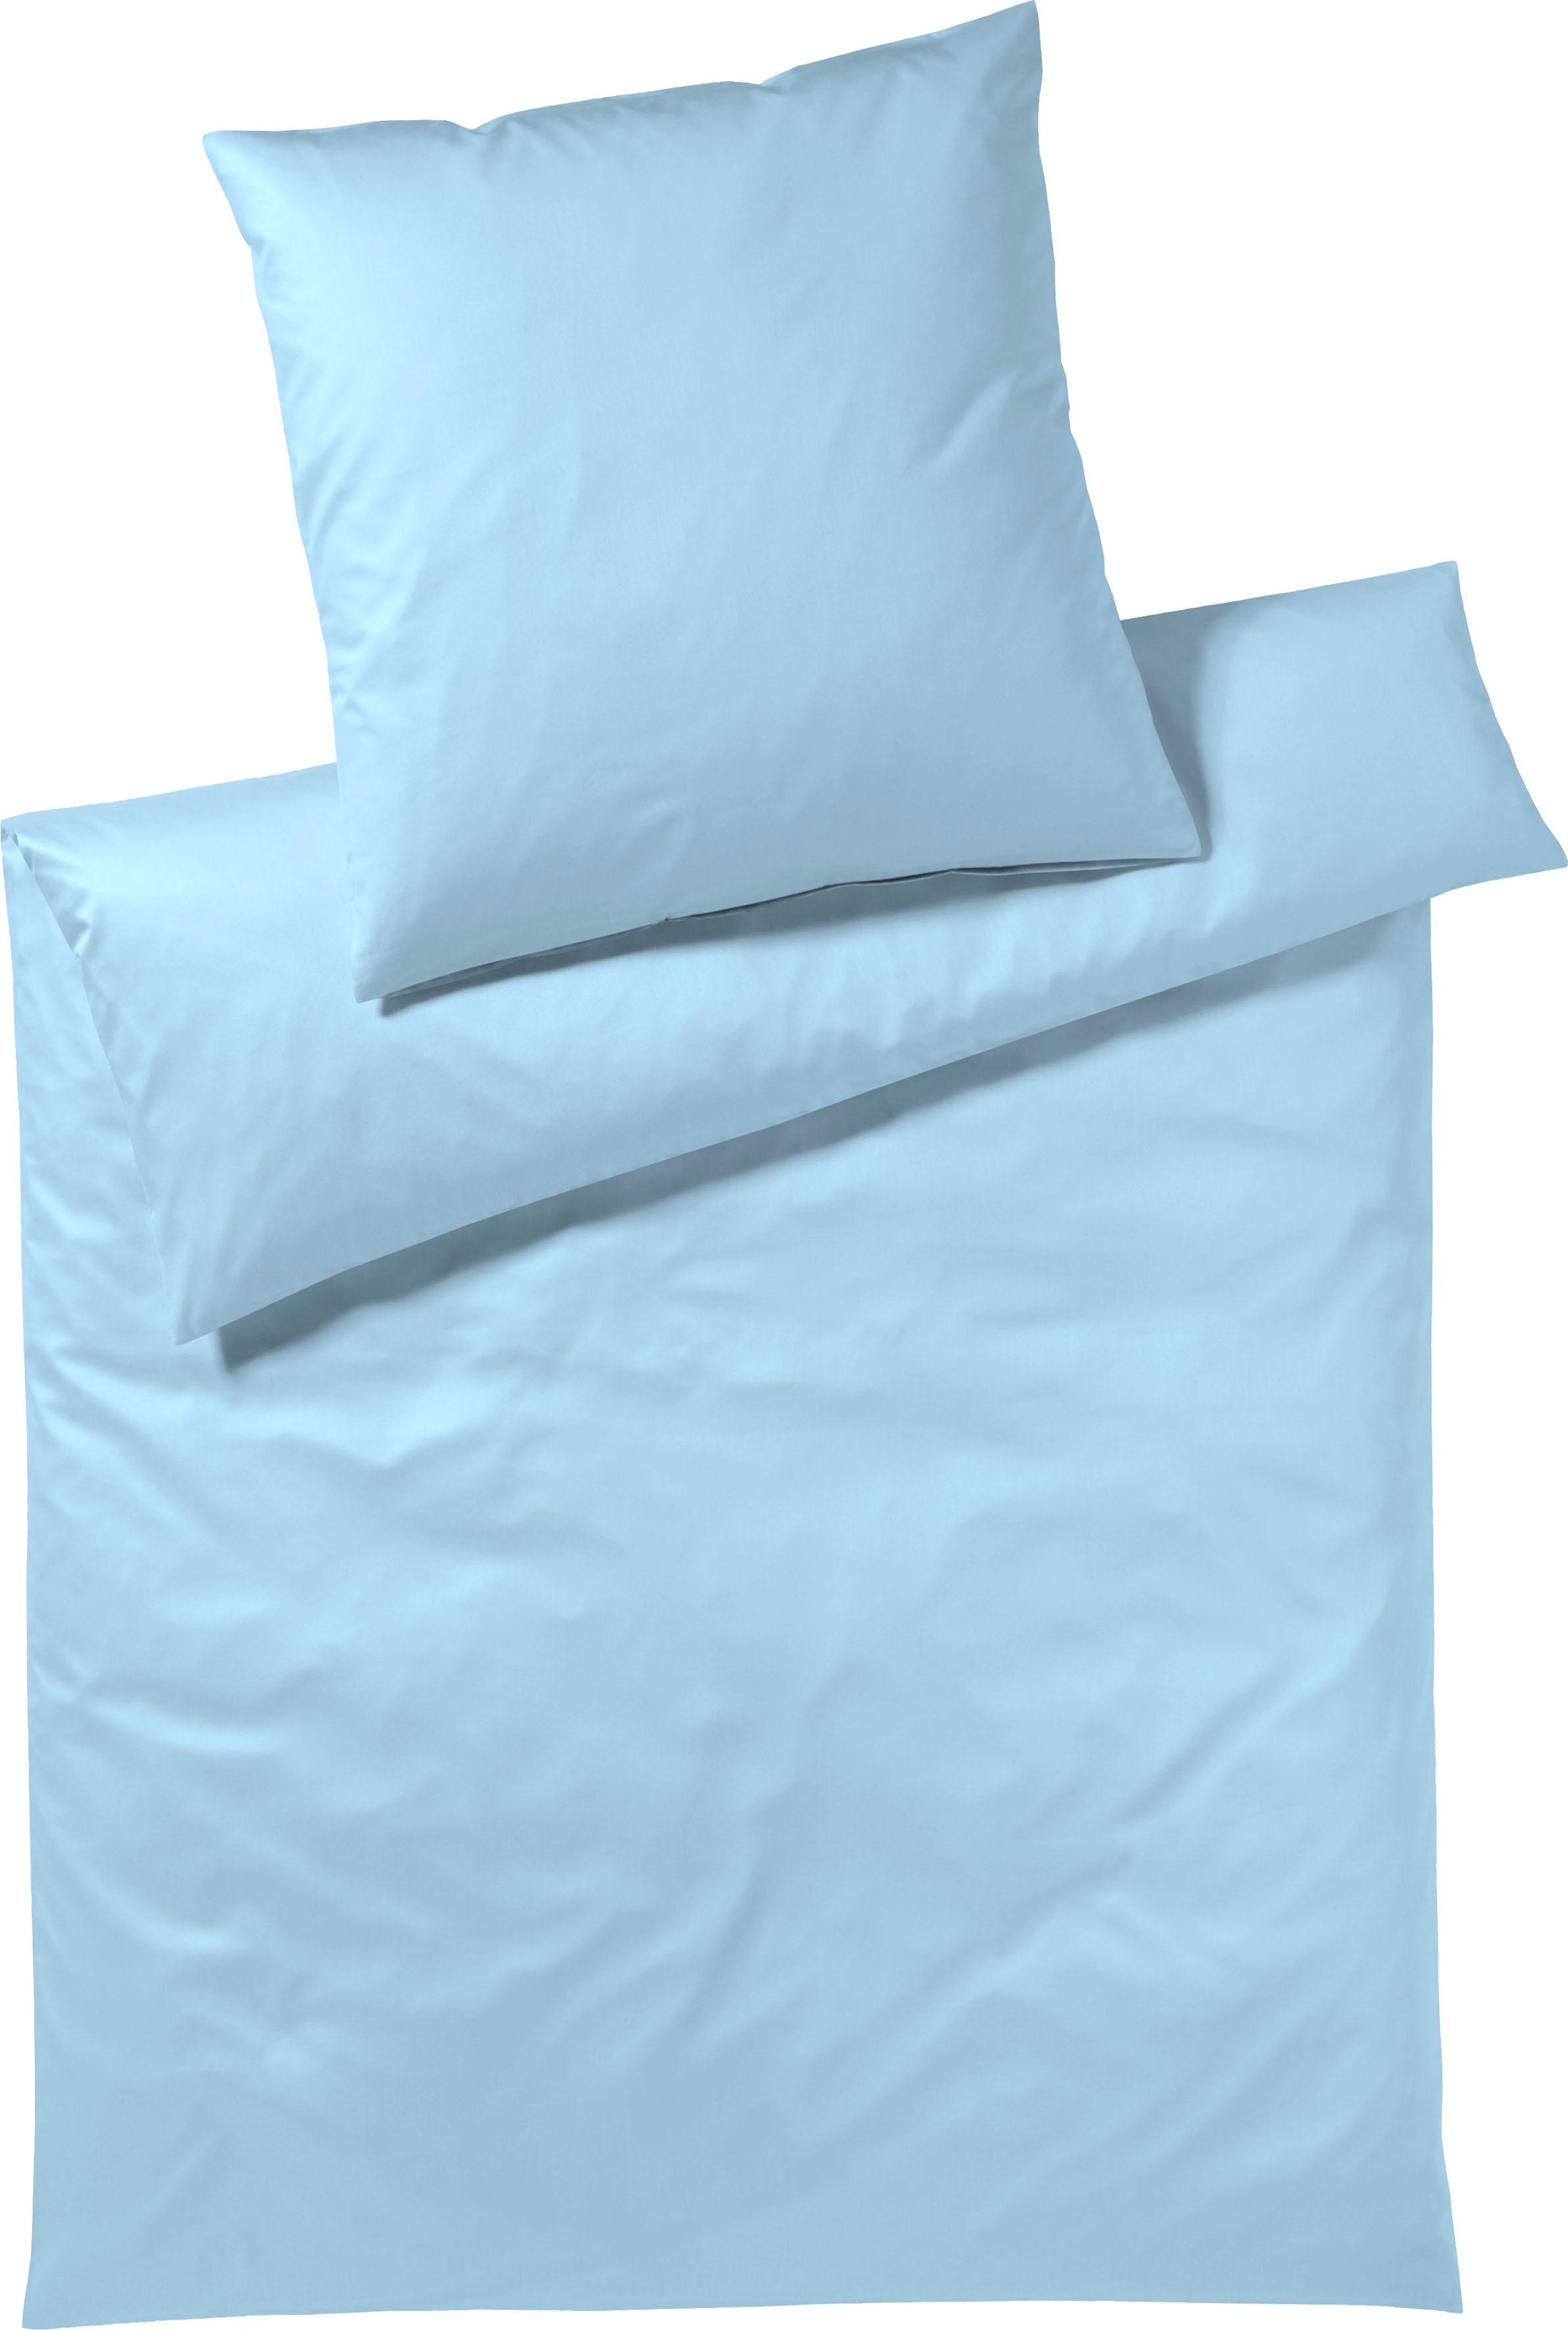 Elegante Bettwäsche »Solid in Gr. 135x200 oder 155x220 cm«, (2 tlg.), Bettwäsche aus Baumwolle, elegante Bettwäsche mit Reißverschluss